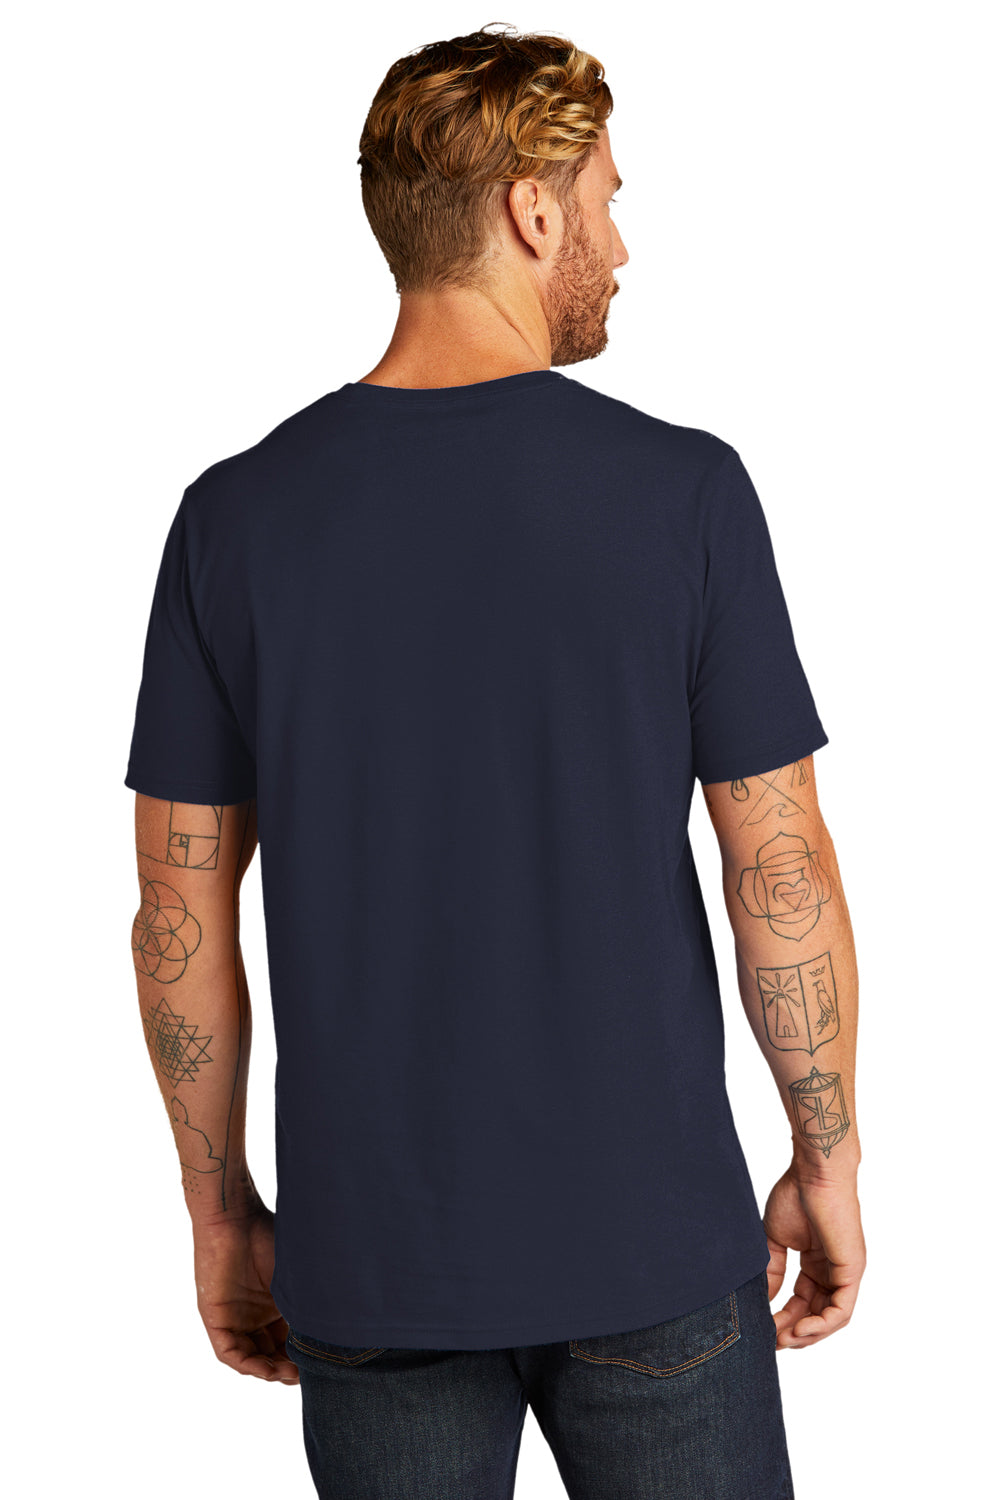 Allmade AL2100 Mens Organic Short Sleeve Crewneck T-Shirt Night Sky Navy Blue Model Back